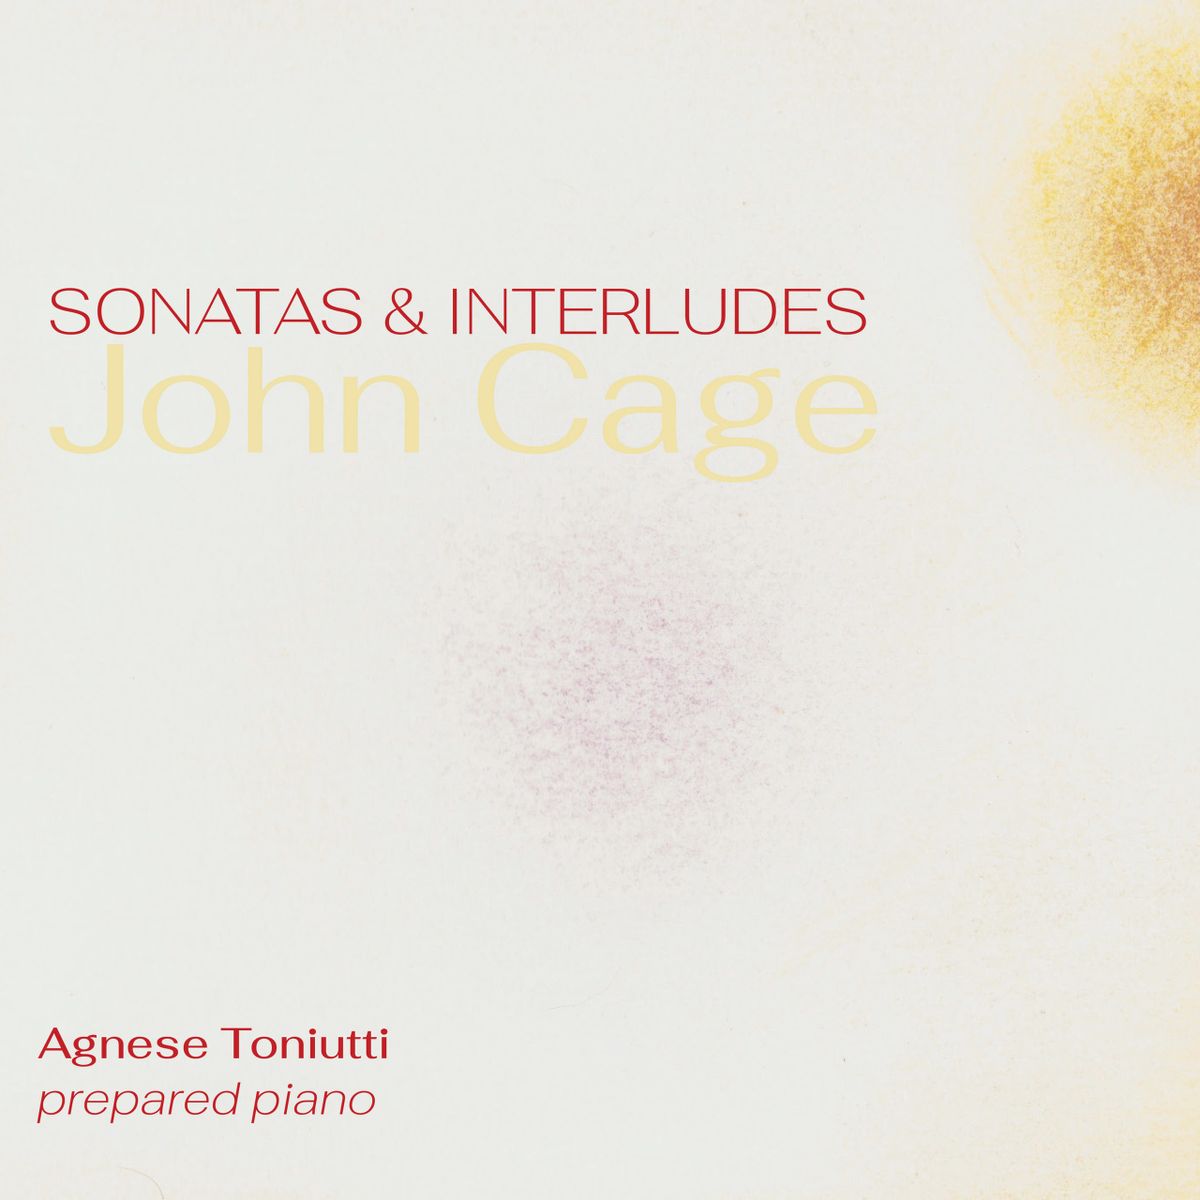 John Cage: Sonata & Interludes for Prepared Piano